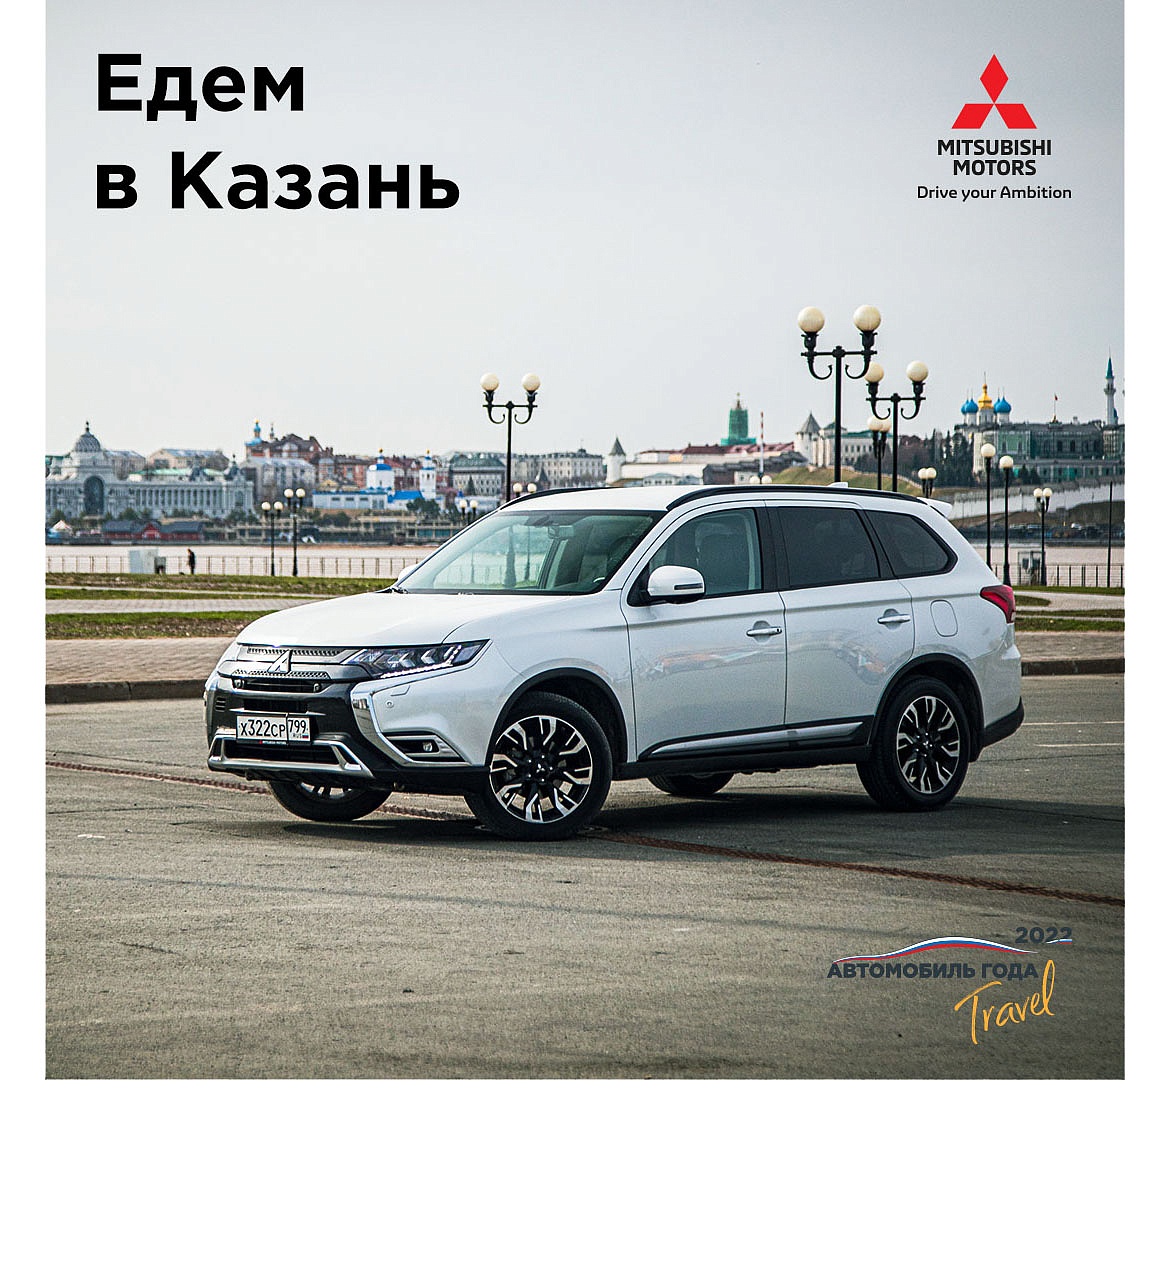 Путешествия по России: едем в Казань на Mitsubishi Outlander